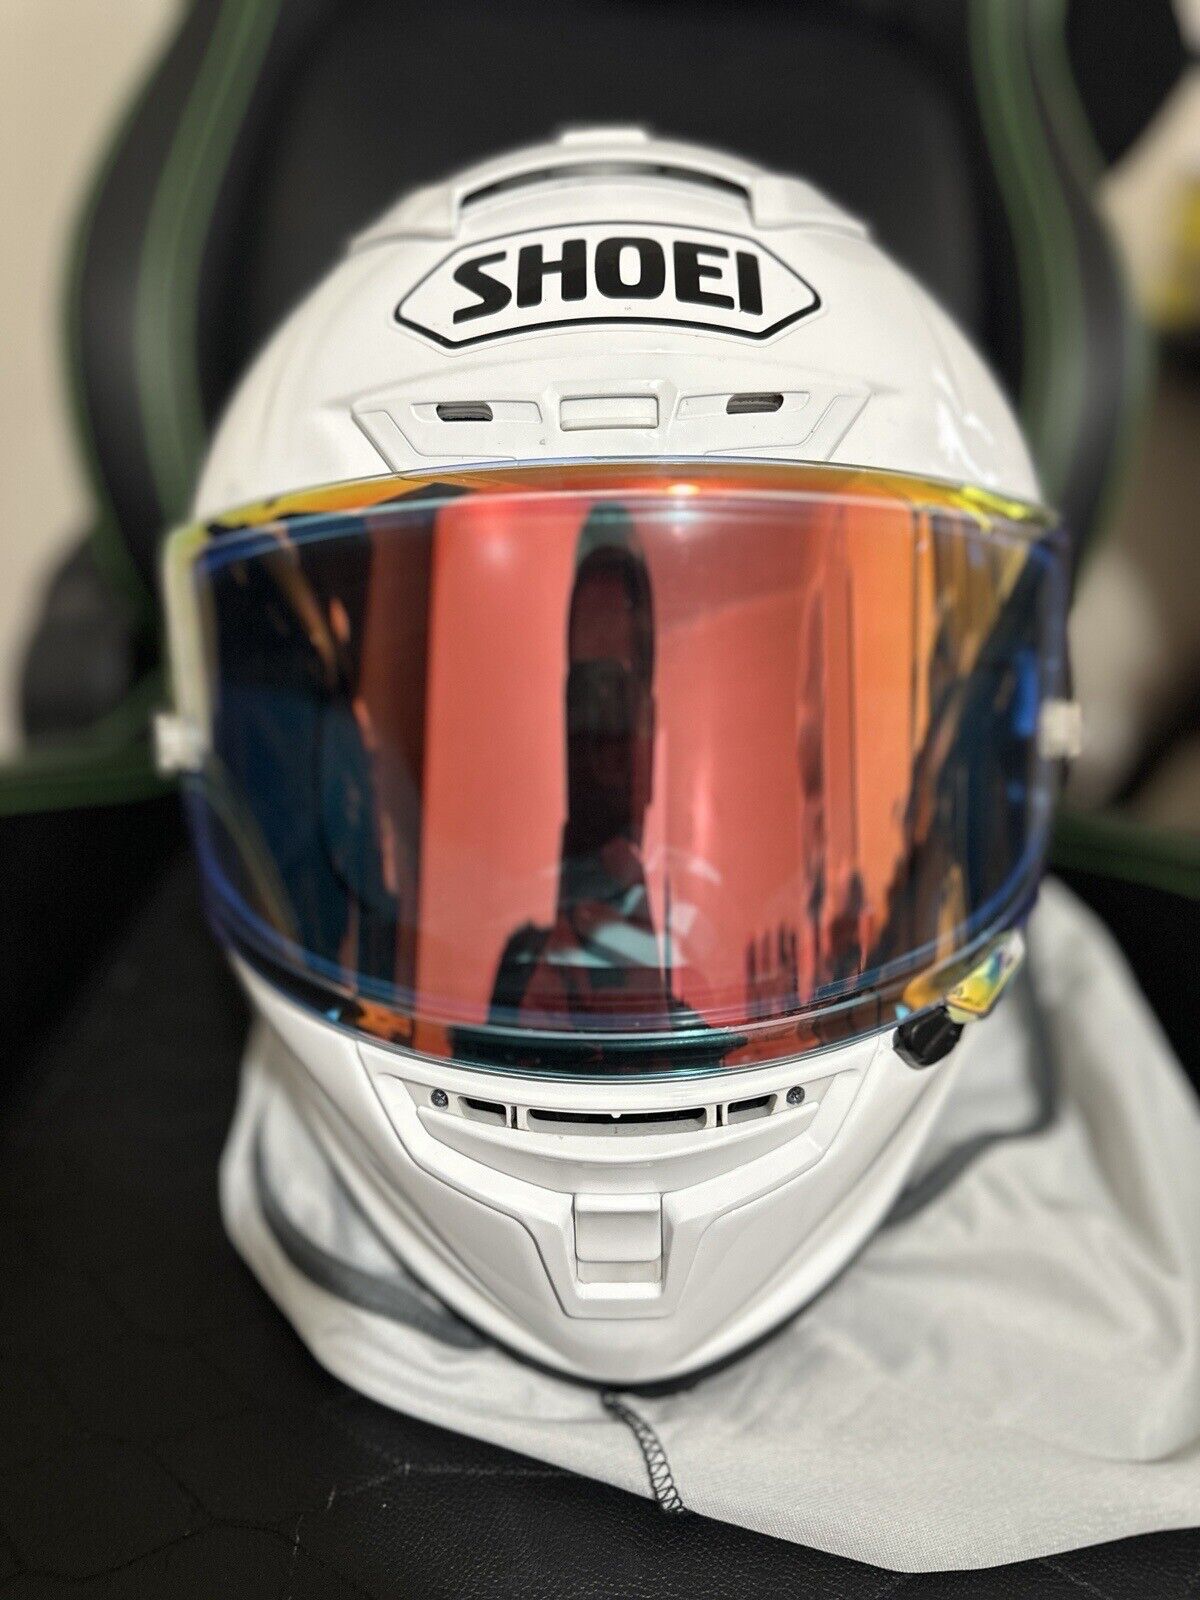 Shoei X-Fourteen White Full Face Motorcycle Helmet With Sena 30k.